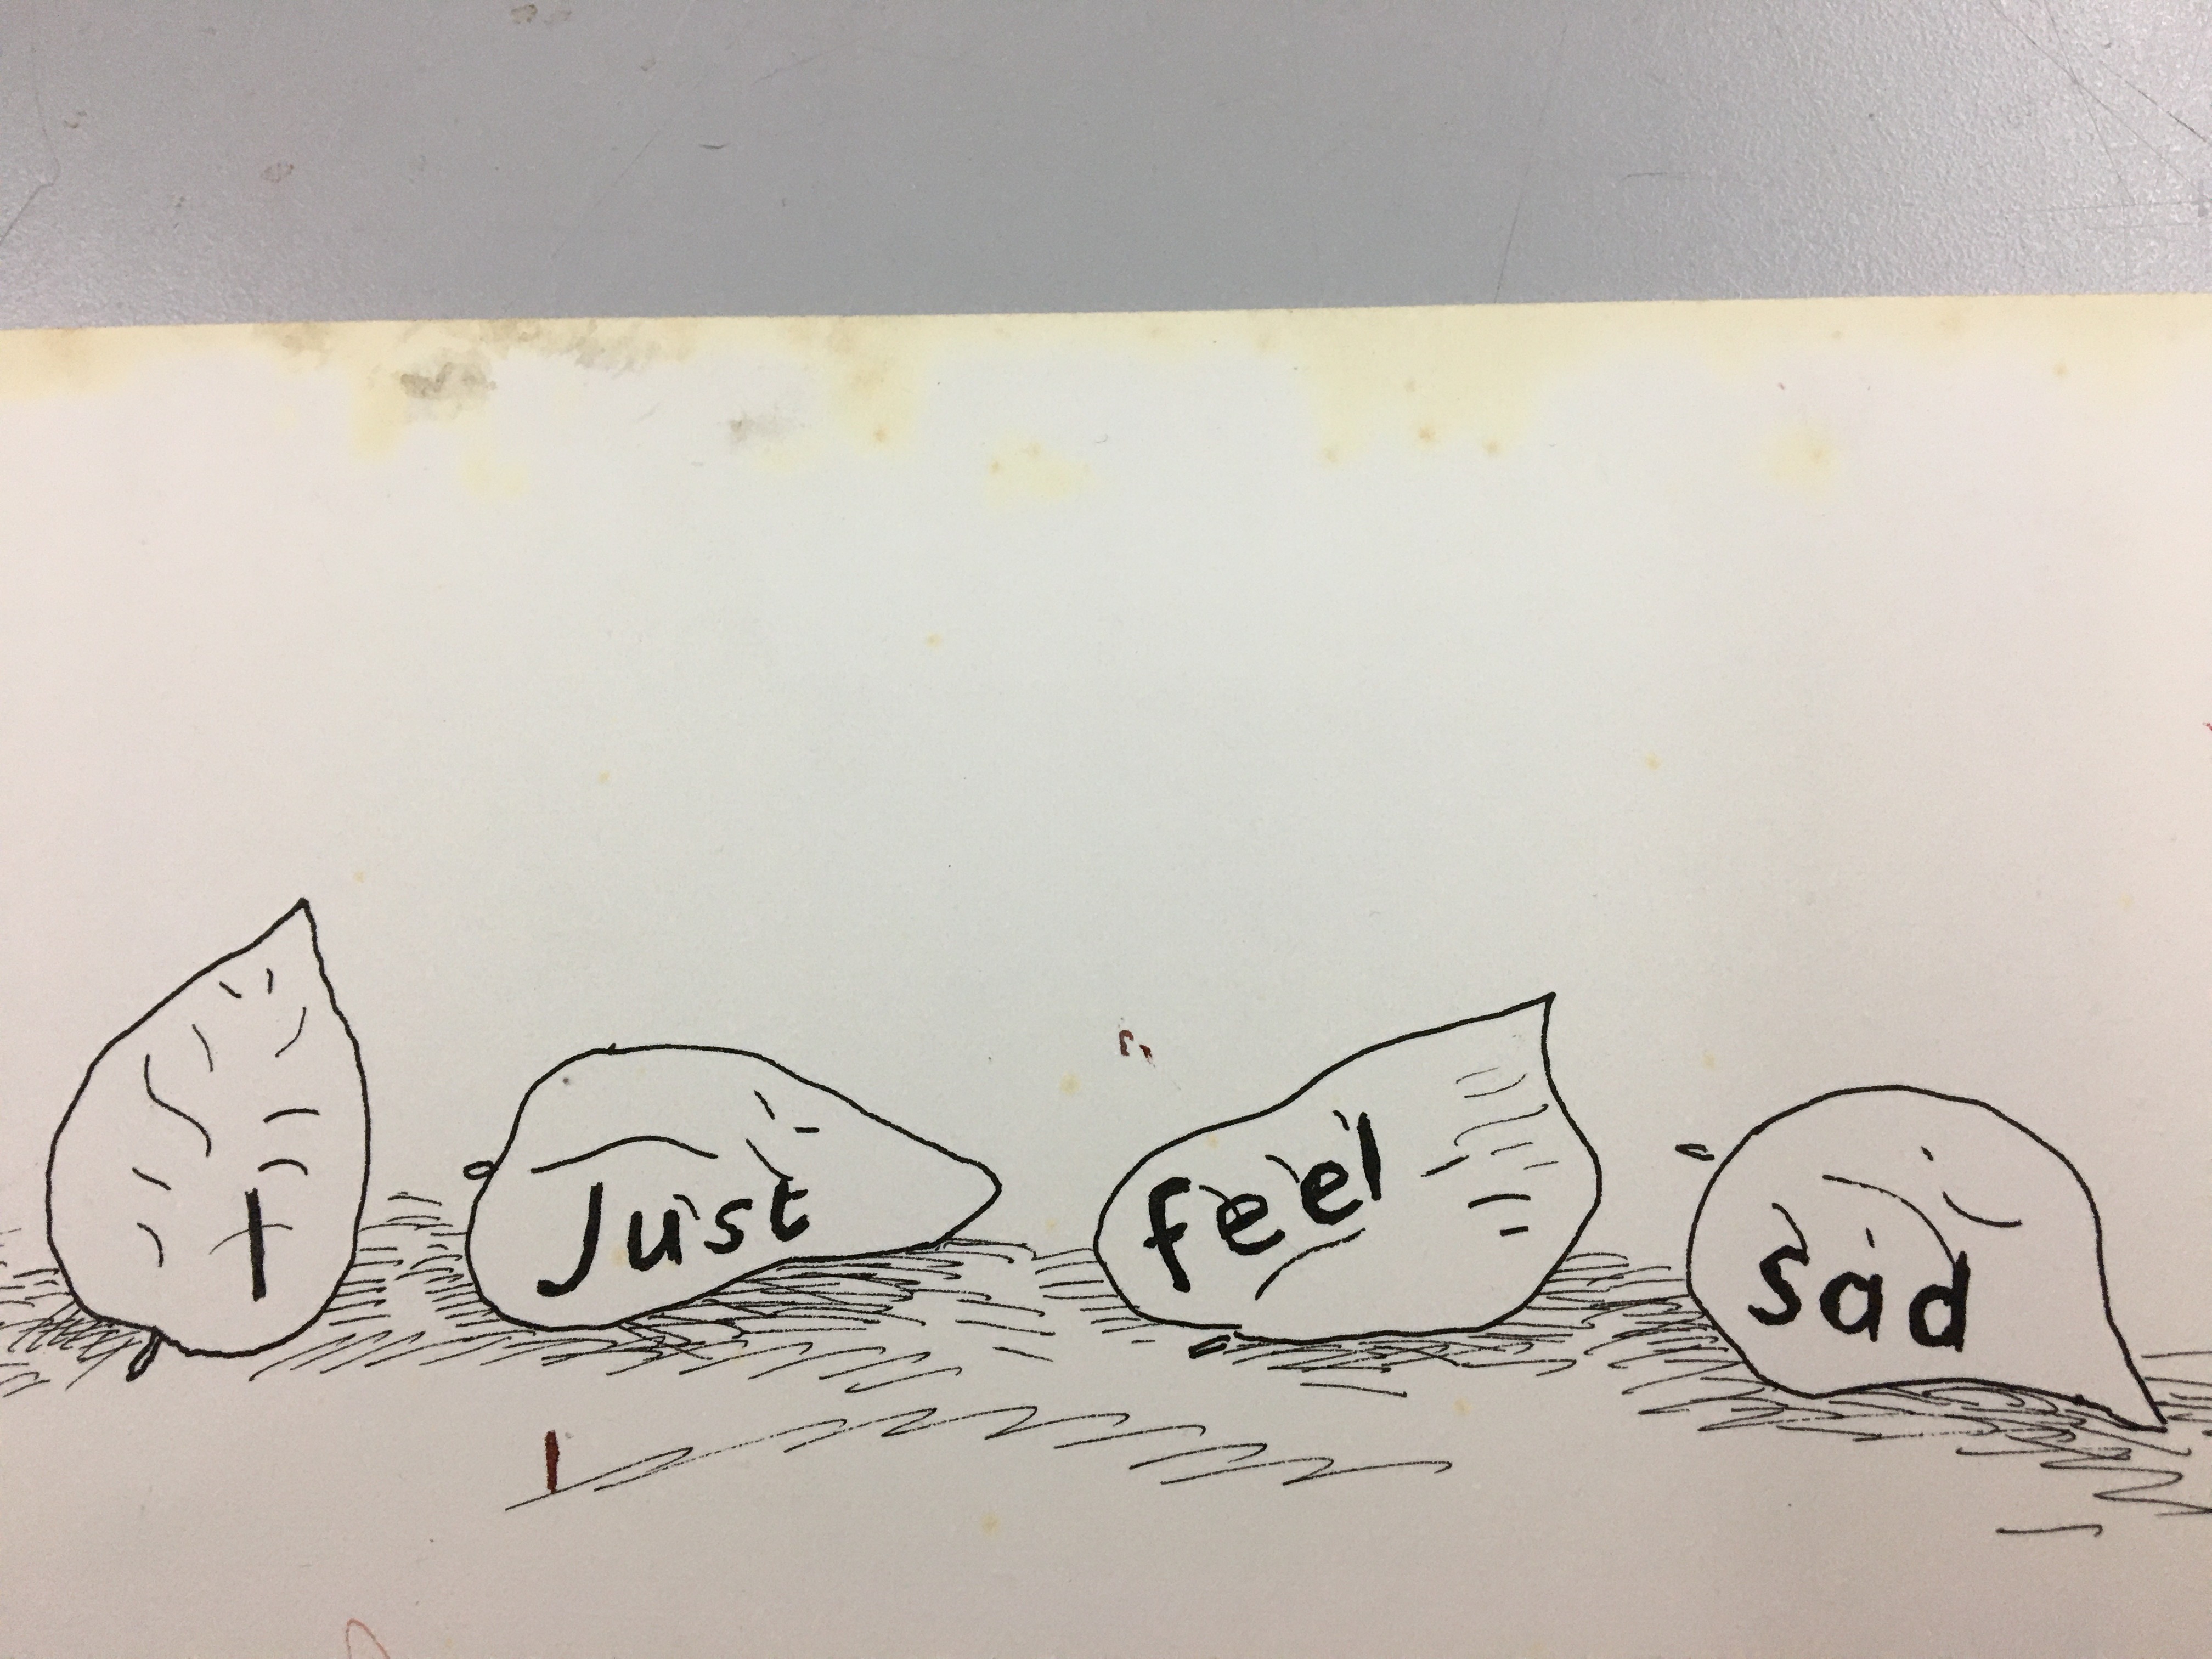 "I just feel sad" written on leaves